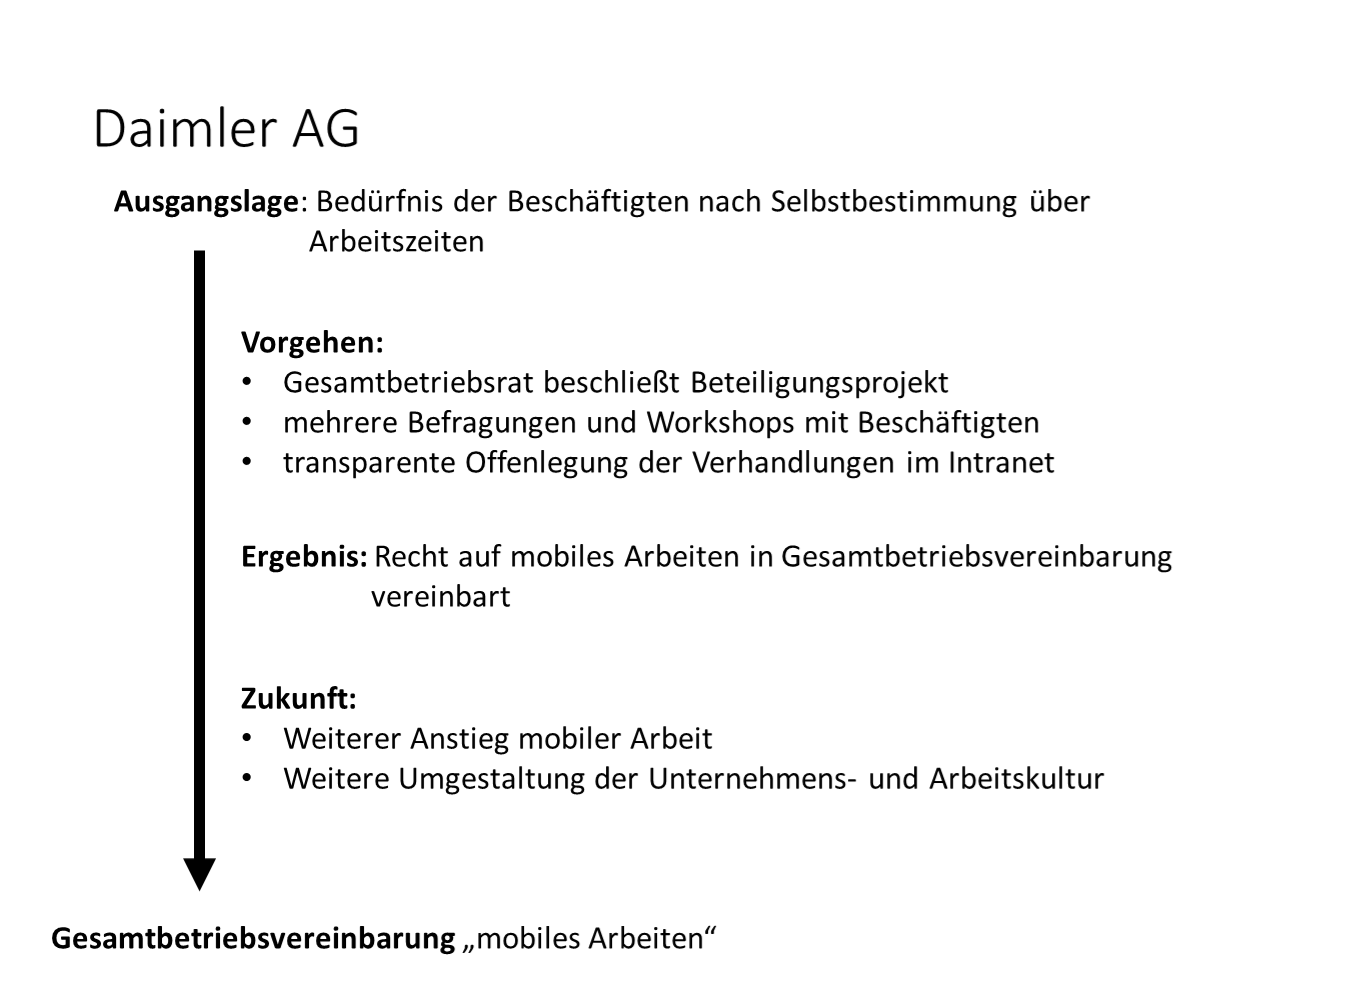 Daimler AG: Gesamtbetriebsvereinbarung zu mobilem Arbeiten